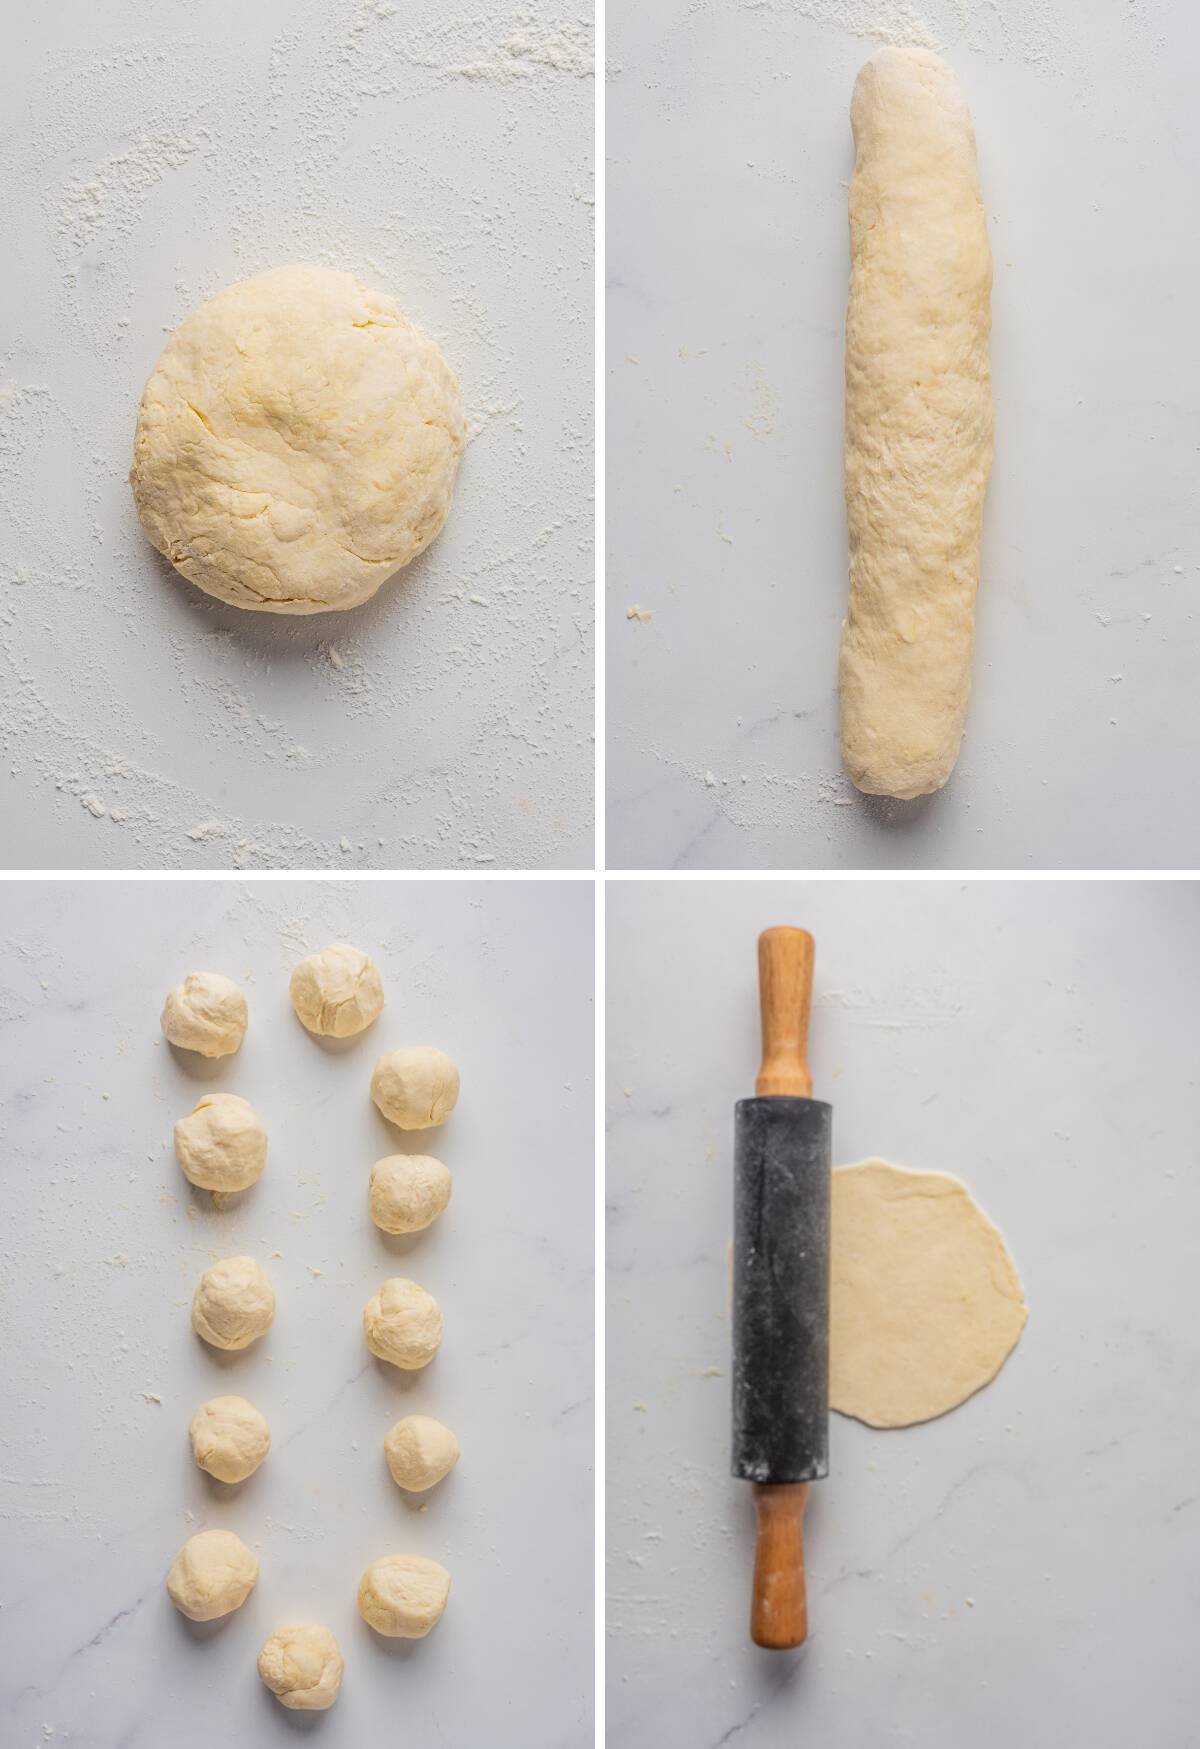 Rolling the empanada dough into balls.